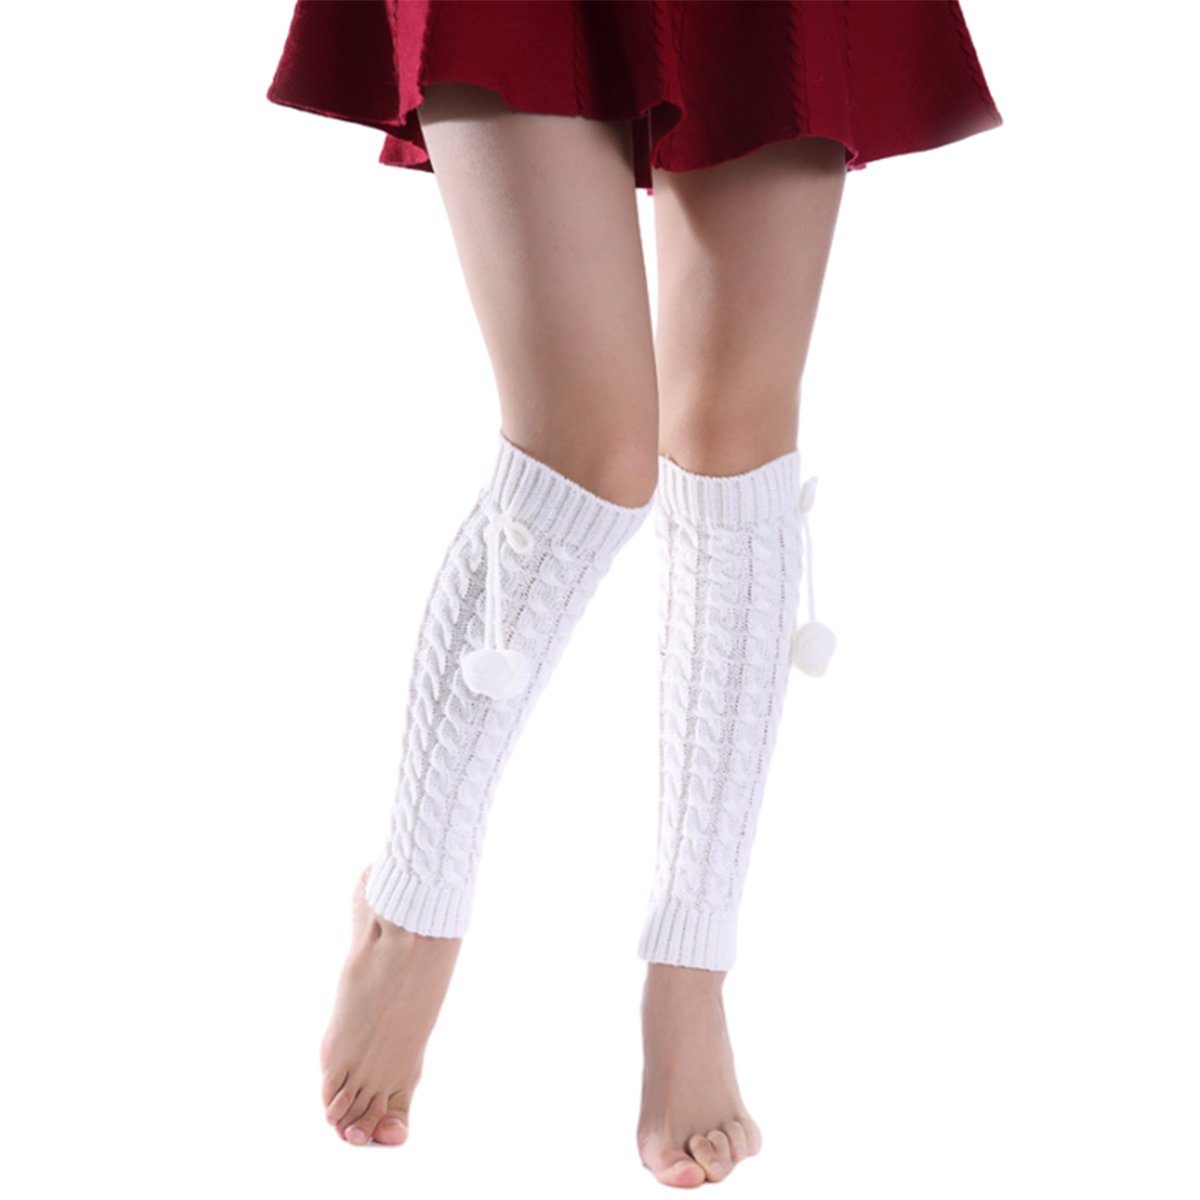 Jormftte Beinstulpen Beinstulpen für Mädchen Frauen Niedliche Armstulpen Lolita Zubehör Weiß | Beinstulpen